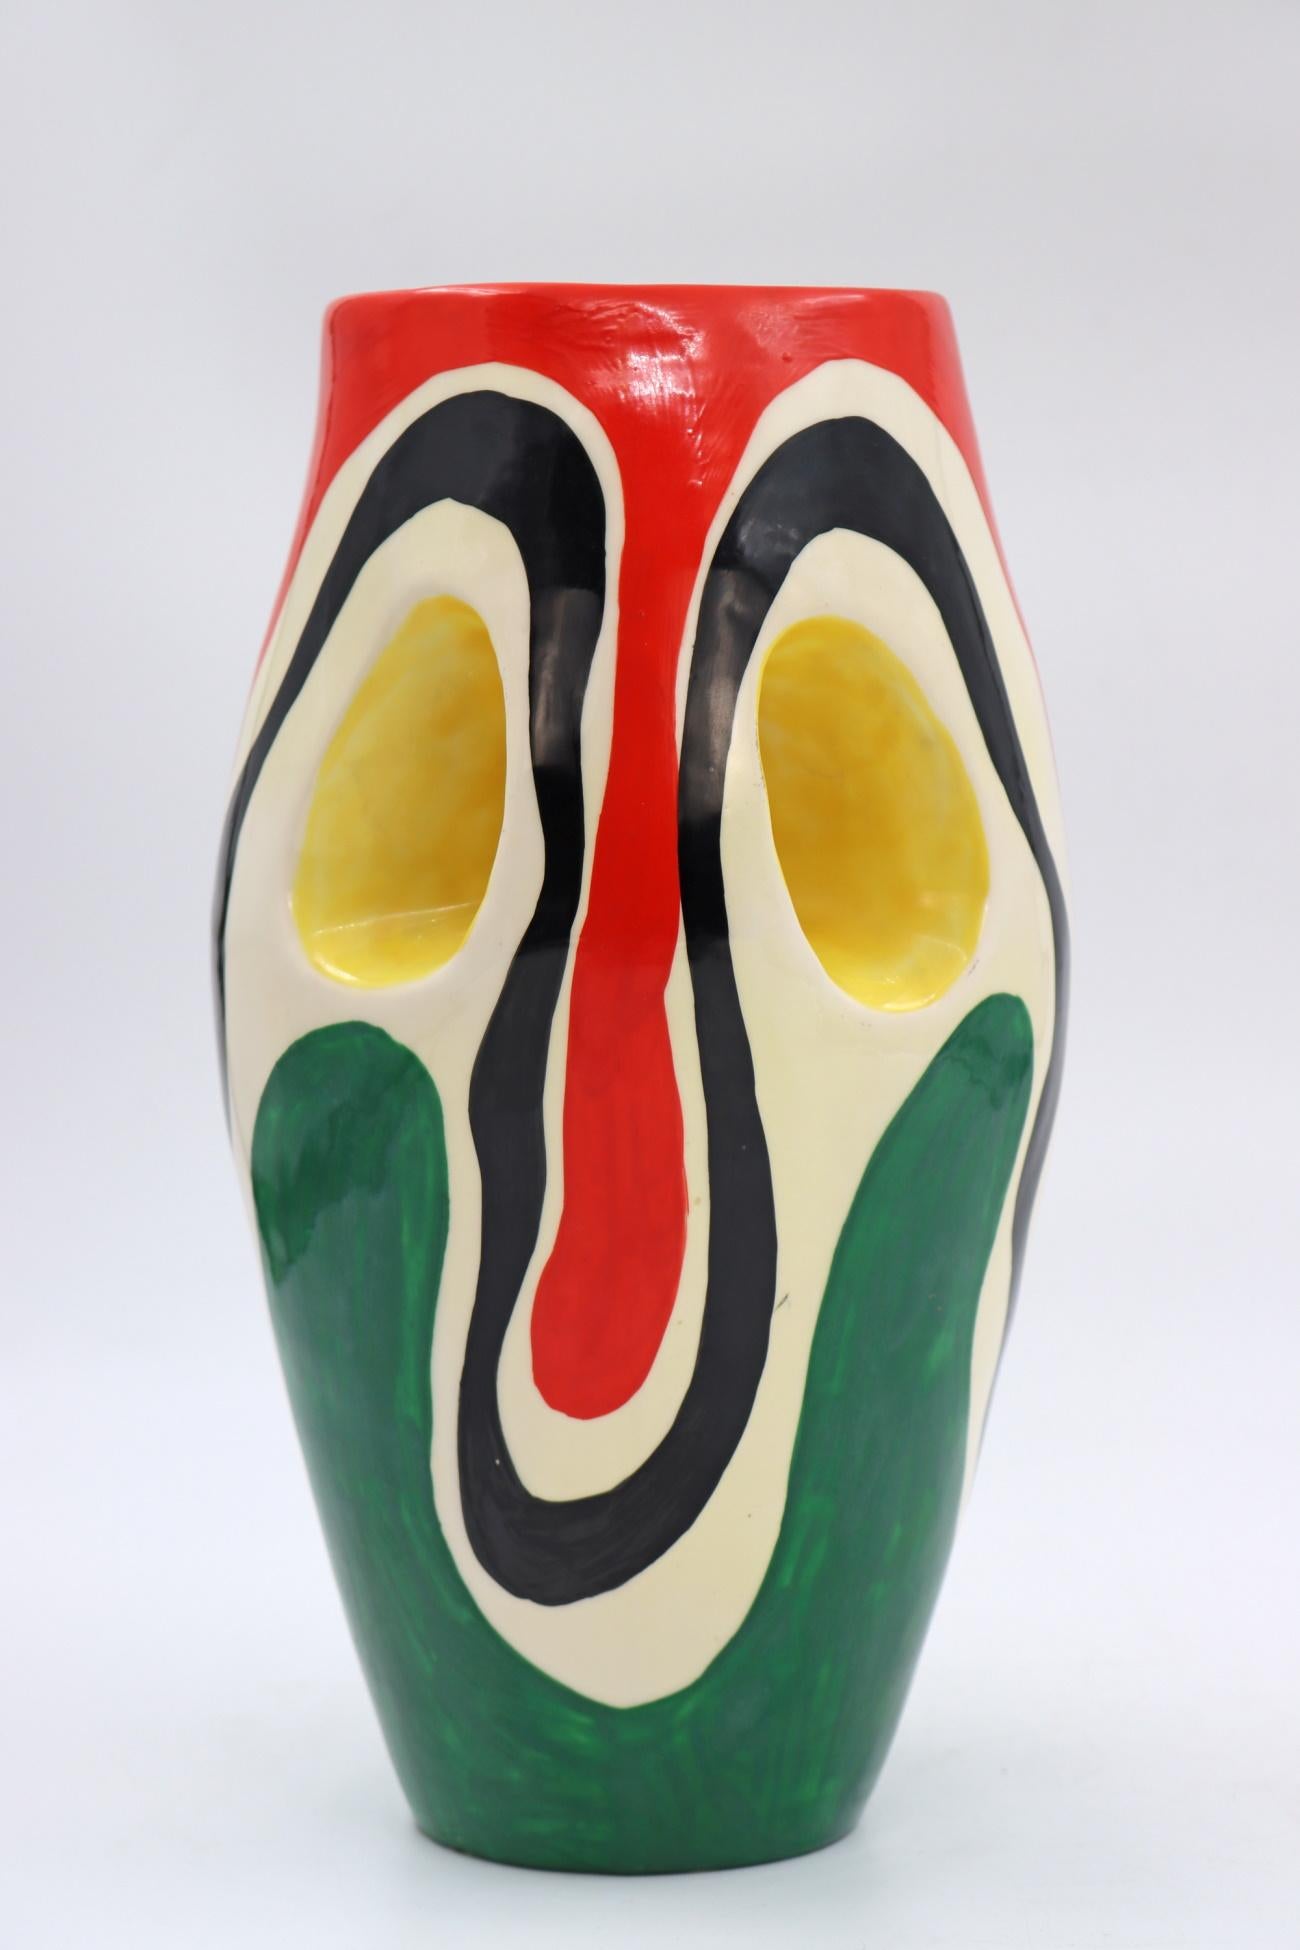 Ceramic vase by Roland Brice and Biot, circa 1950.
Measures: H: 31 cm, W: 20 cm, D: 18 cm.